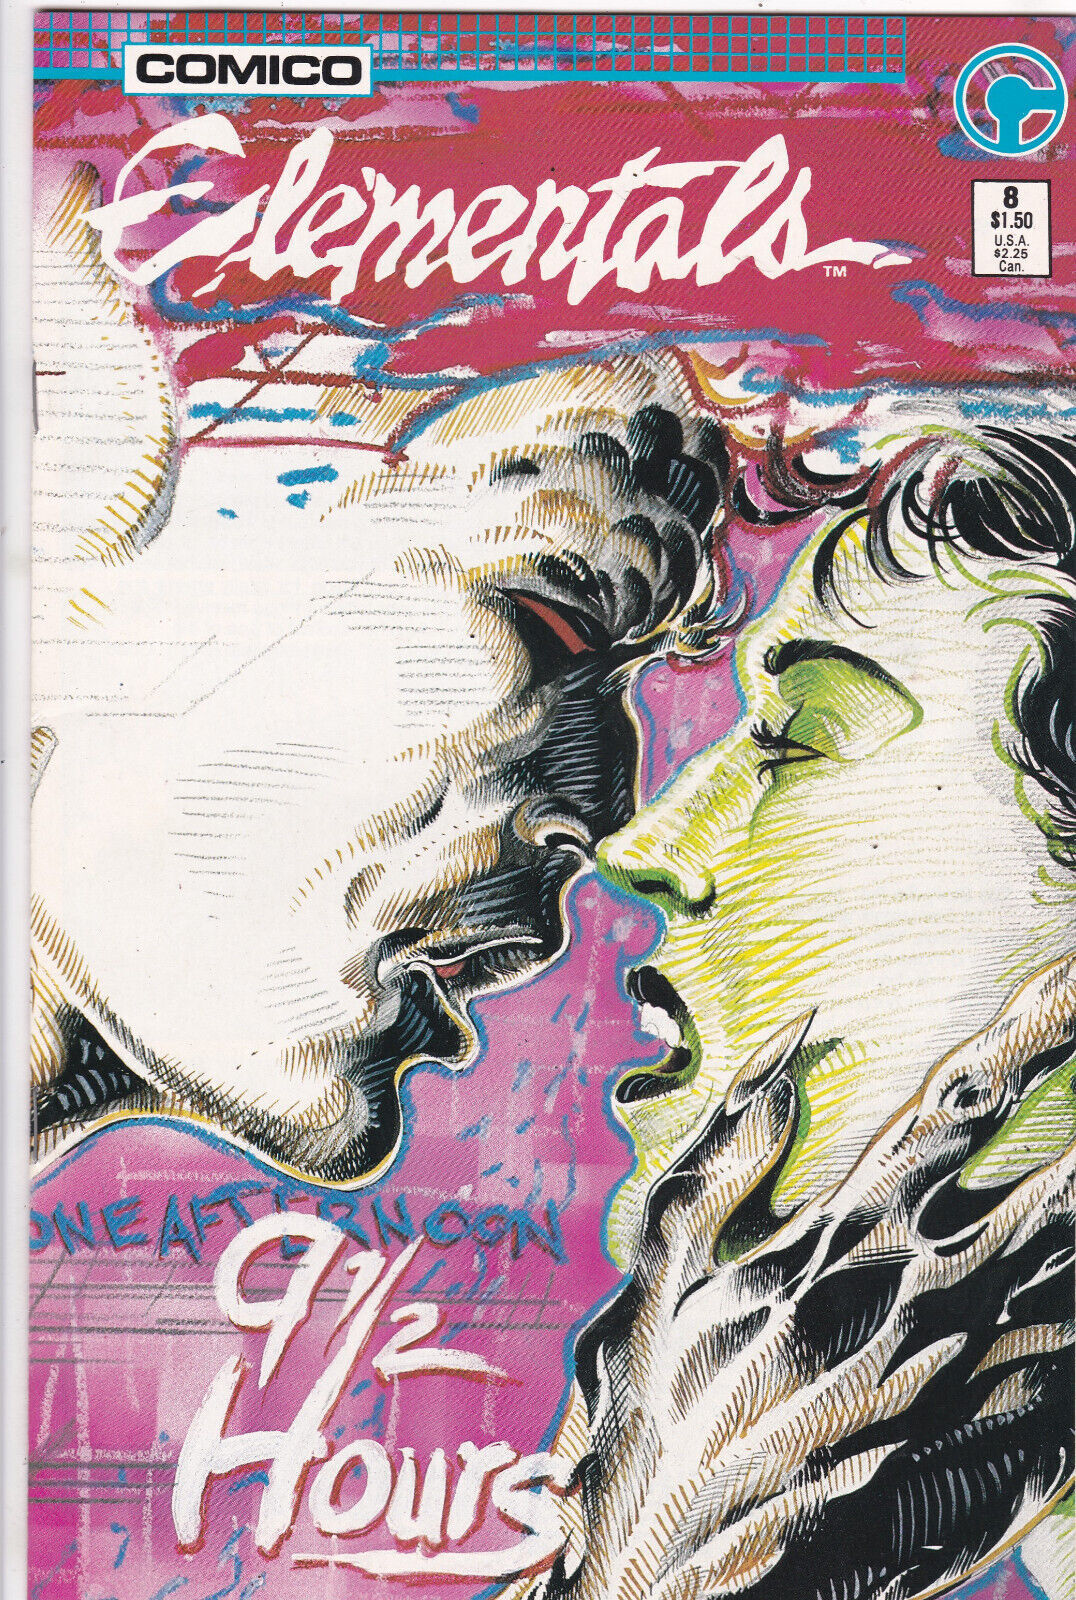 Elementals #8, Vol. 1 (1984-1988) Comico High Grade